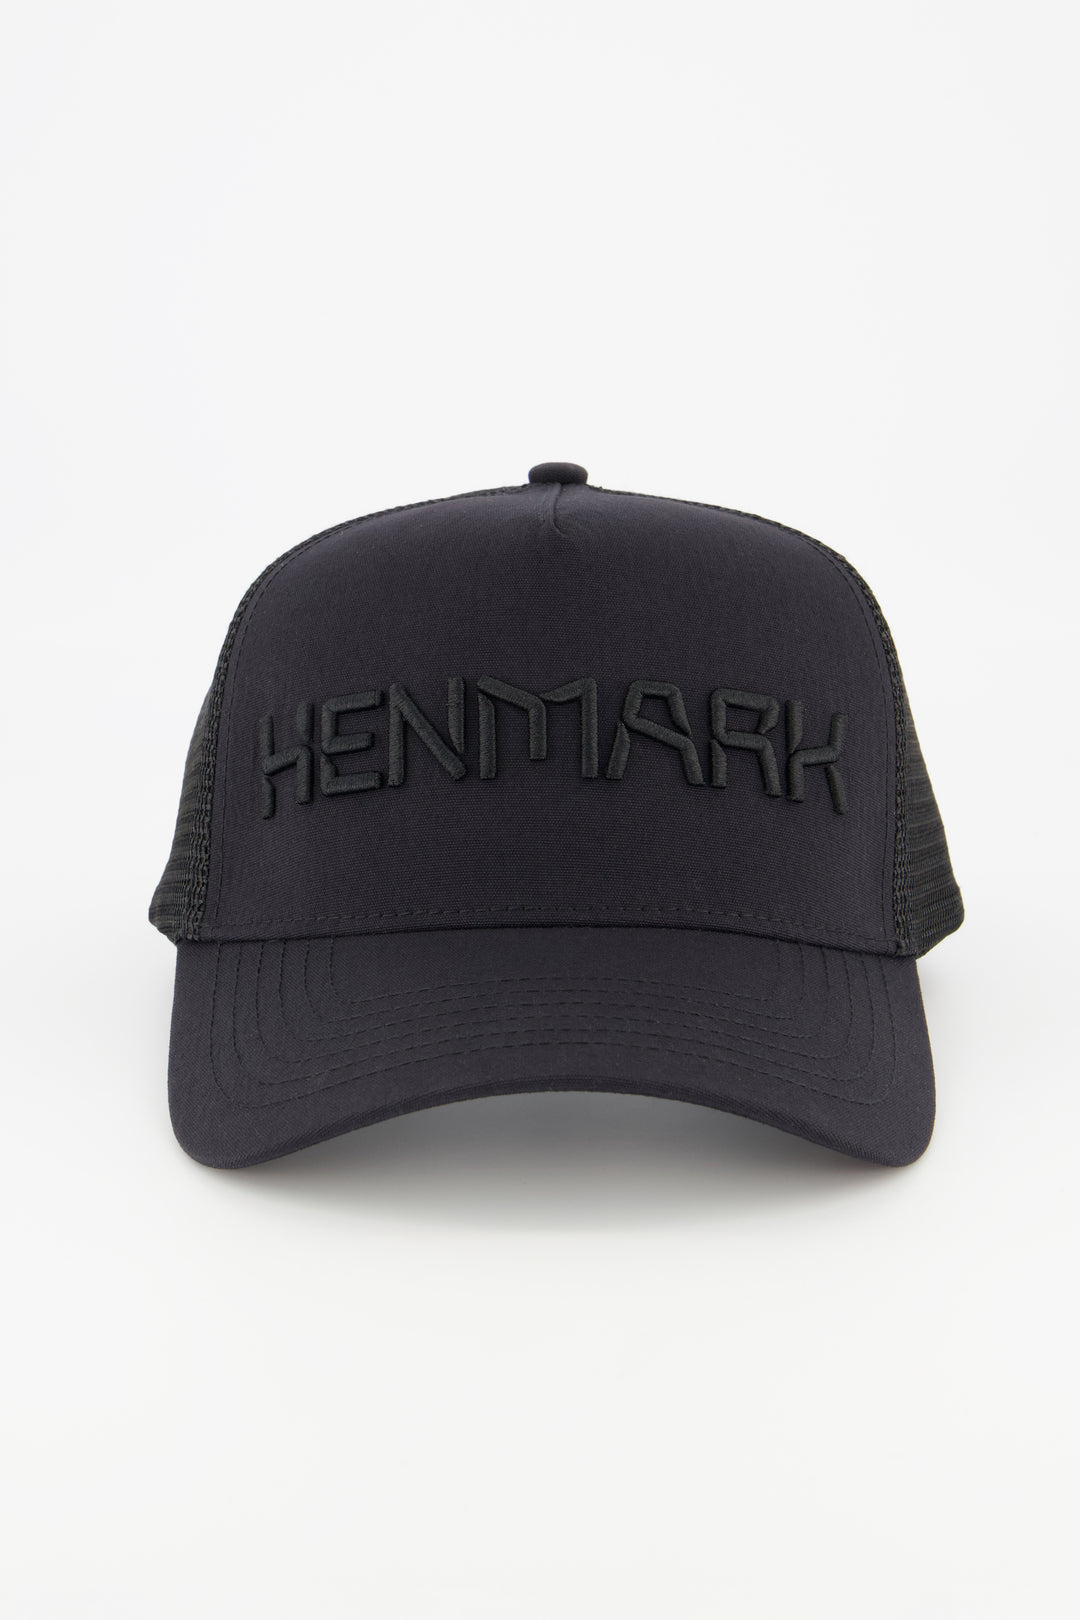 Henmark Caps U Logo Trucker Cap   